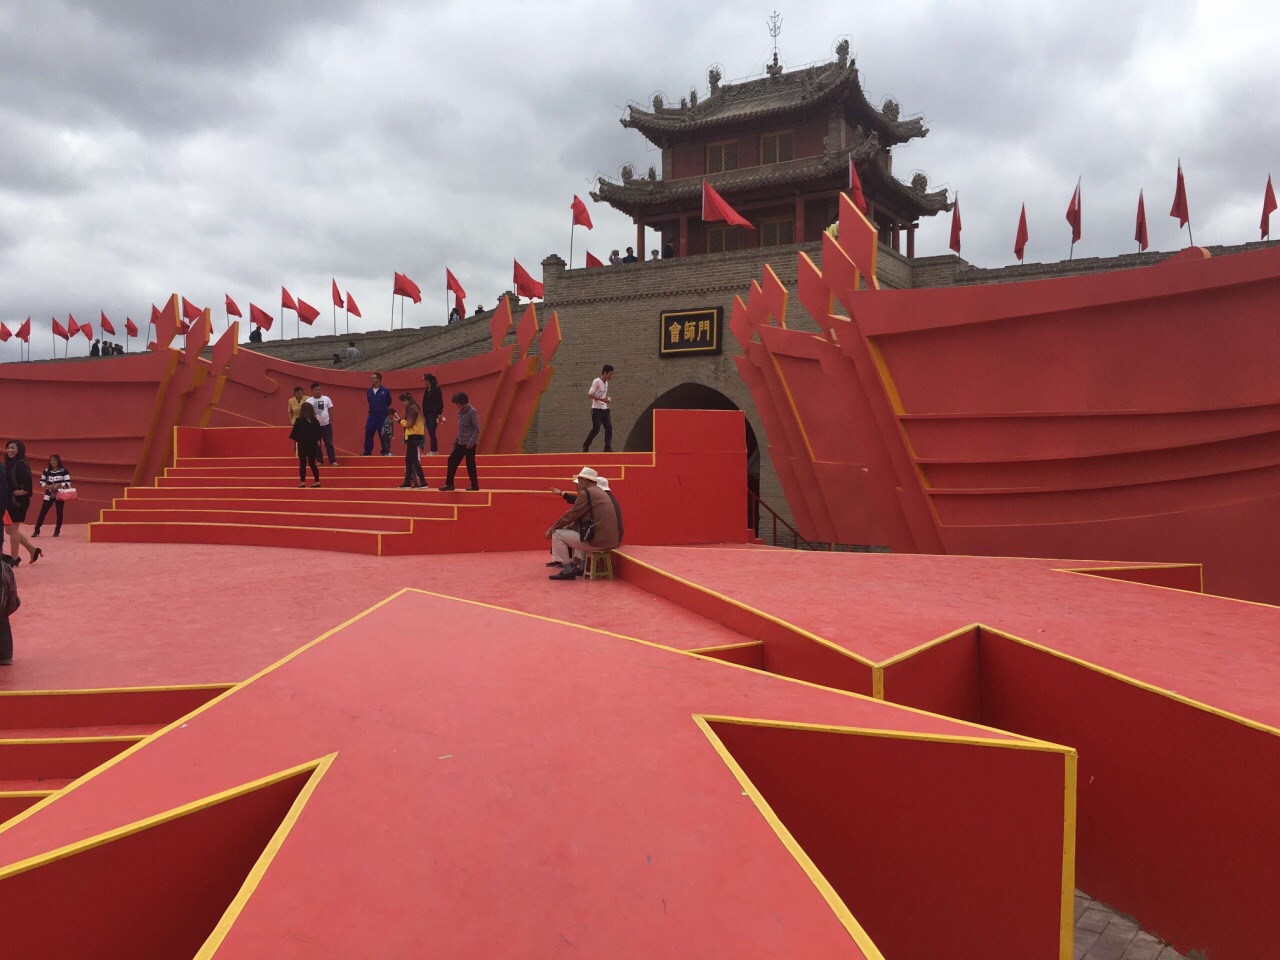 会宁的红色文化景点图片